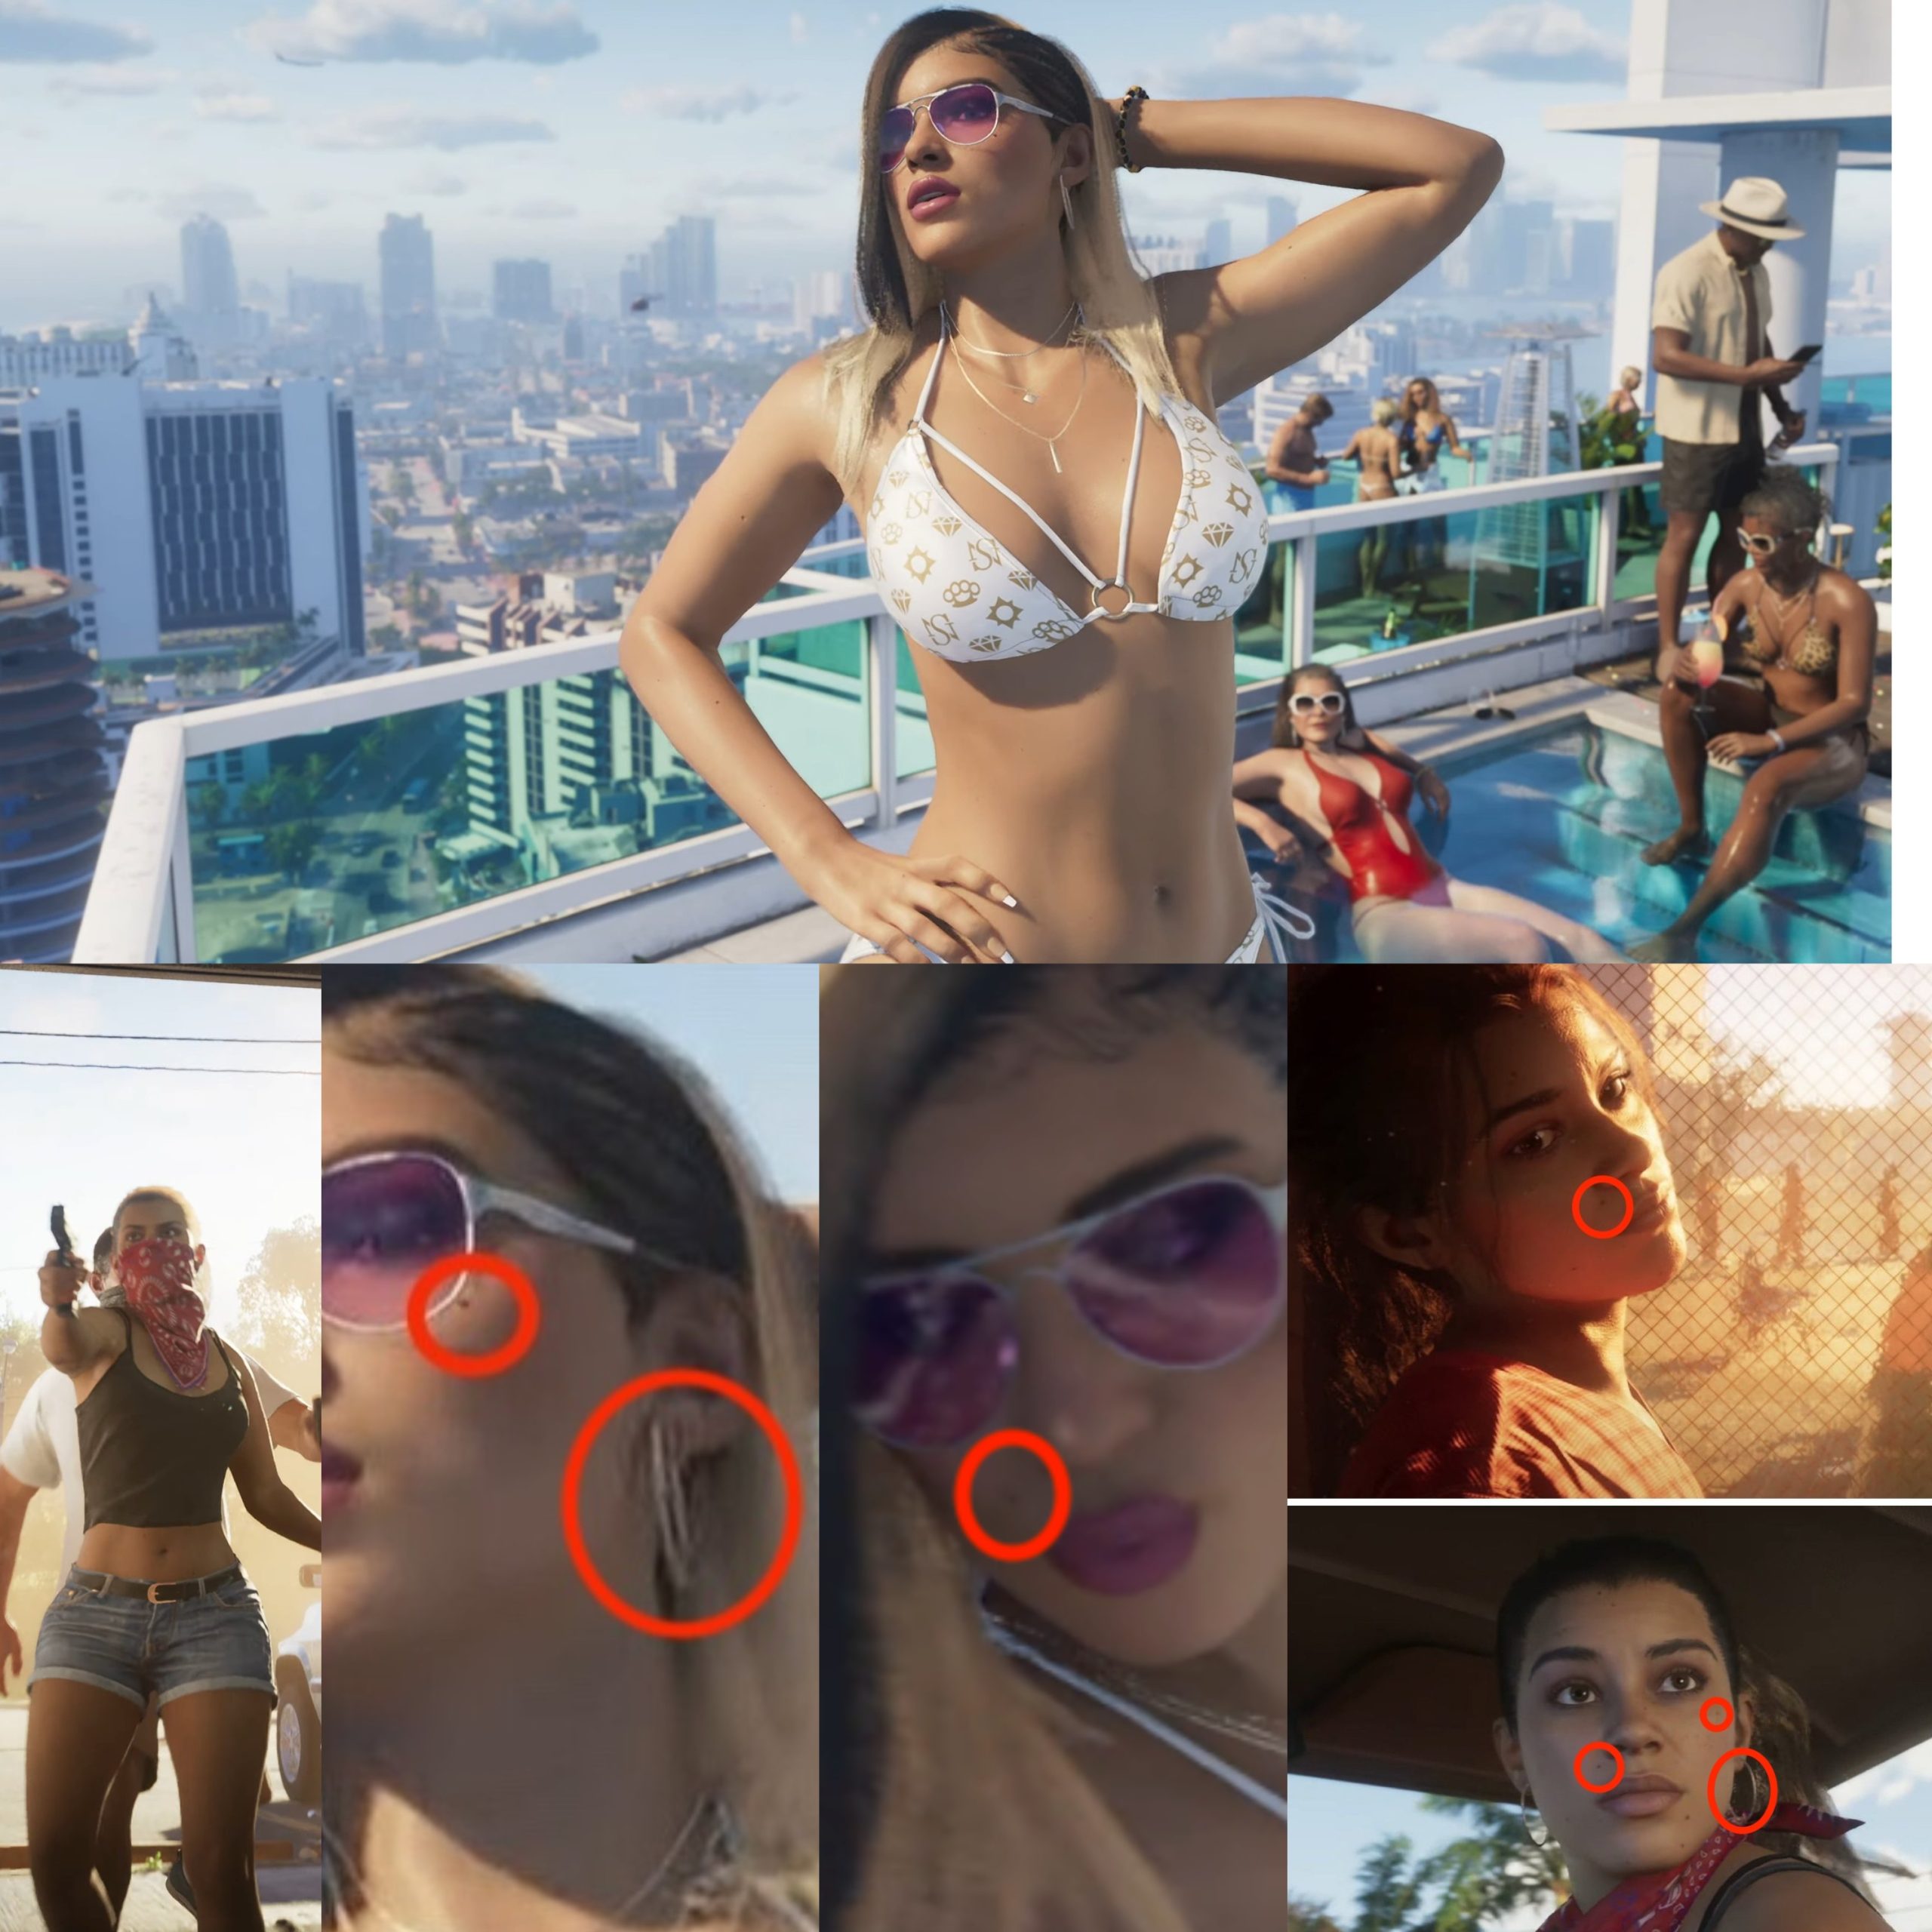 Montagem mostra vários detalhes que supostamente provam que a mulher de biquíni em GTA 6 é a protagonista do jogo, Lucia